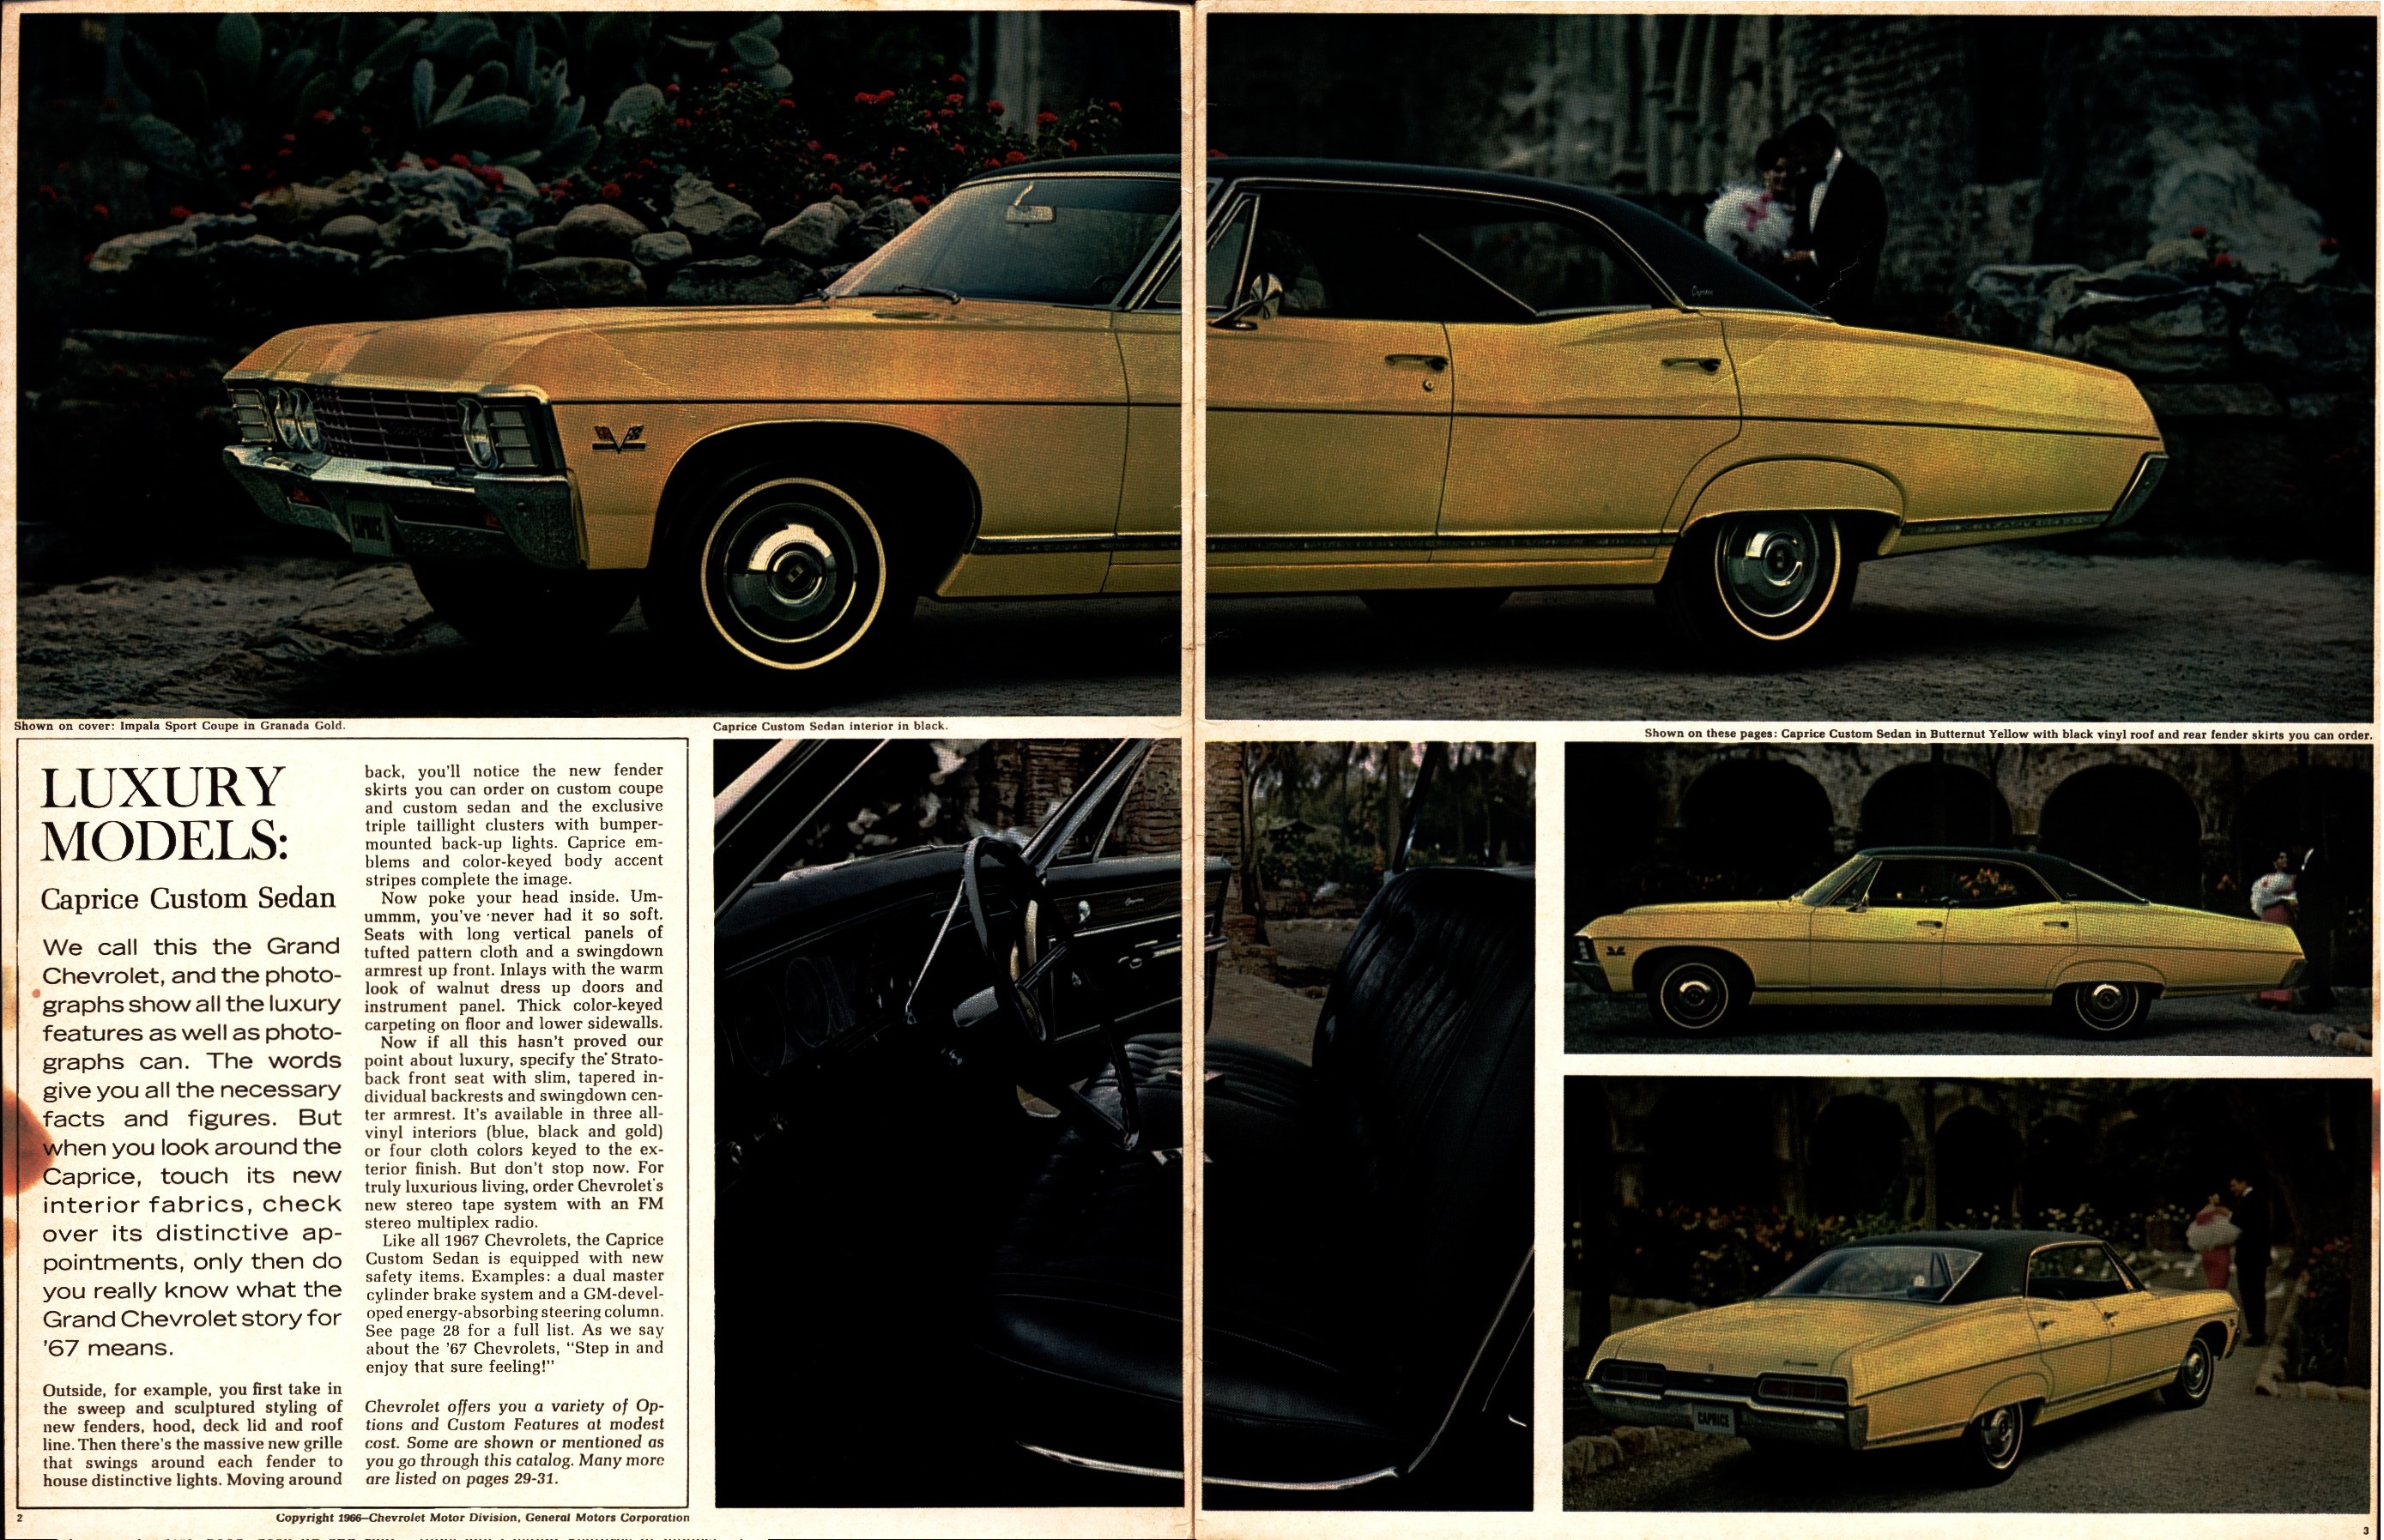 1967 Chevrolet Full Size Brochure (R-1) 02-03